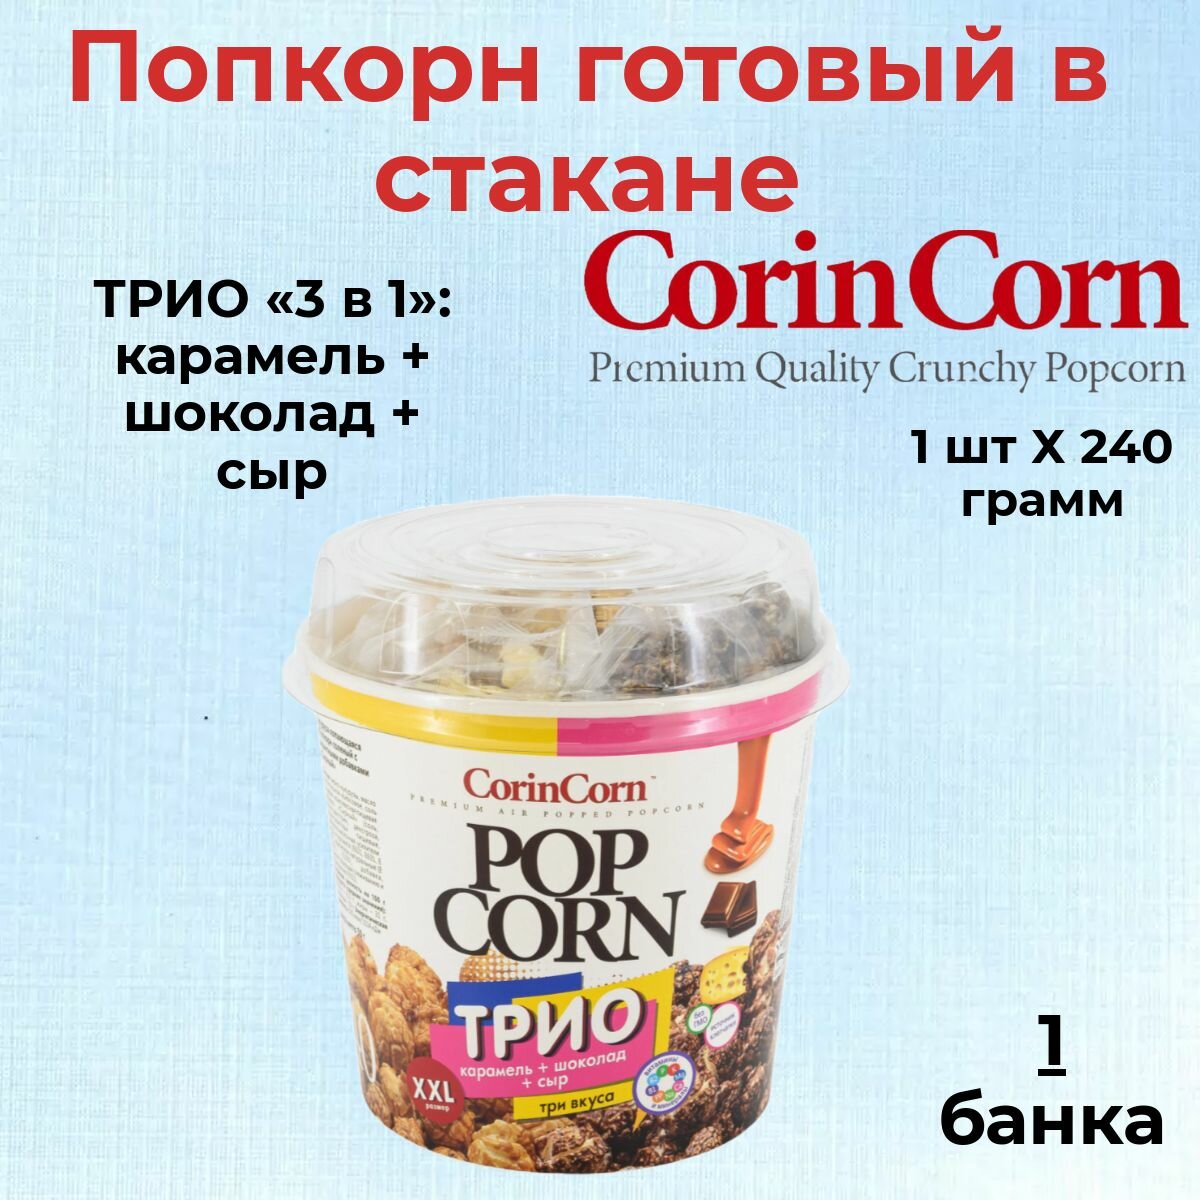 CorinCorn Готовый попкорн трио 3 в 1: карамель + шоколад + сыр 1 штука 240 грамм